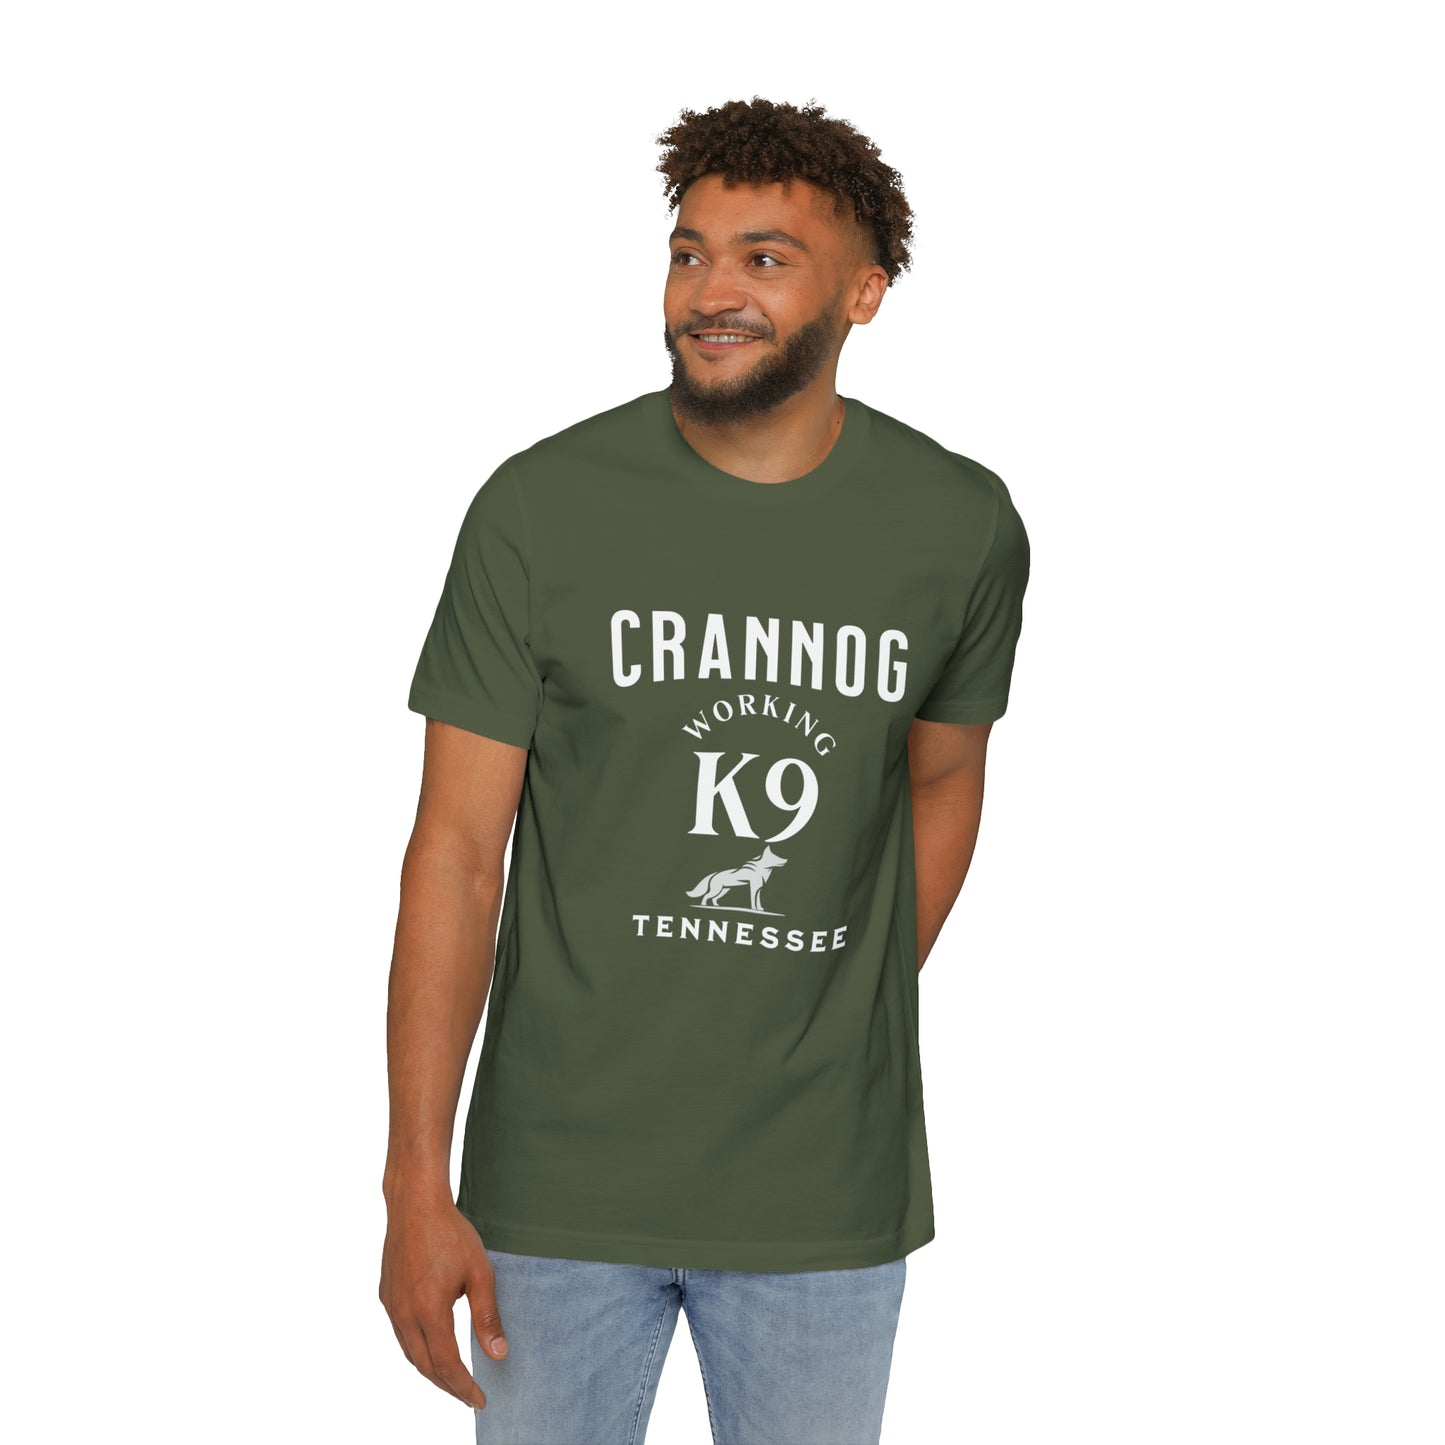 Crannog WK9, USA-Made Unisex Short-Sleeve Jersey T-Shirt